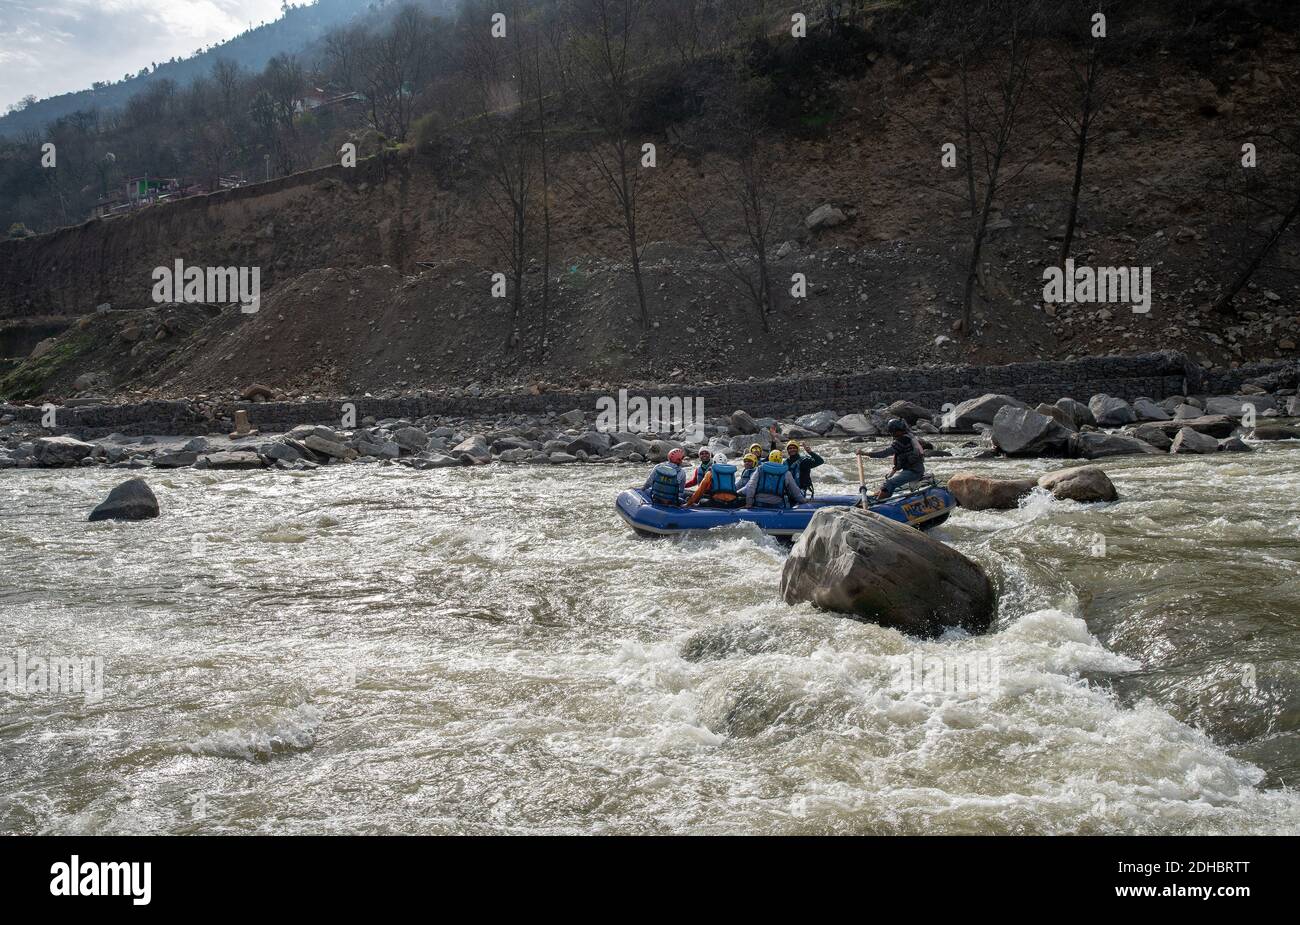 02-10-2019 Kullu, Indien. Fröhliche Menschen - Passagiere auf Gummiboot Lenkung - Rafting auf dem Fluss Beas mit großen Steinen Stockfoto